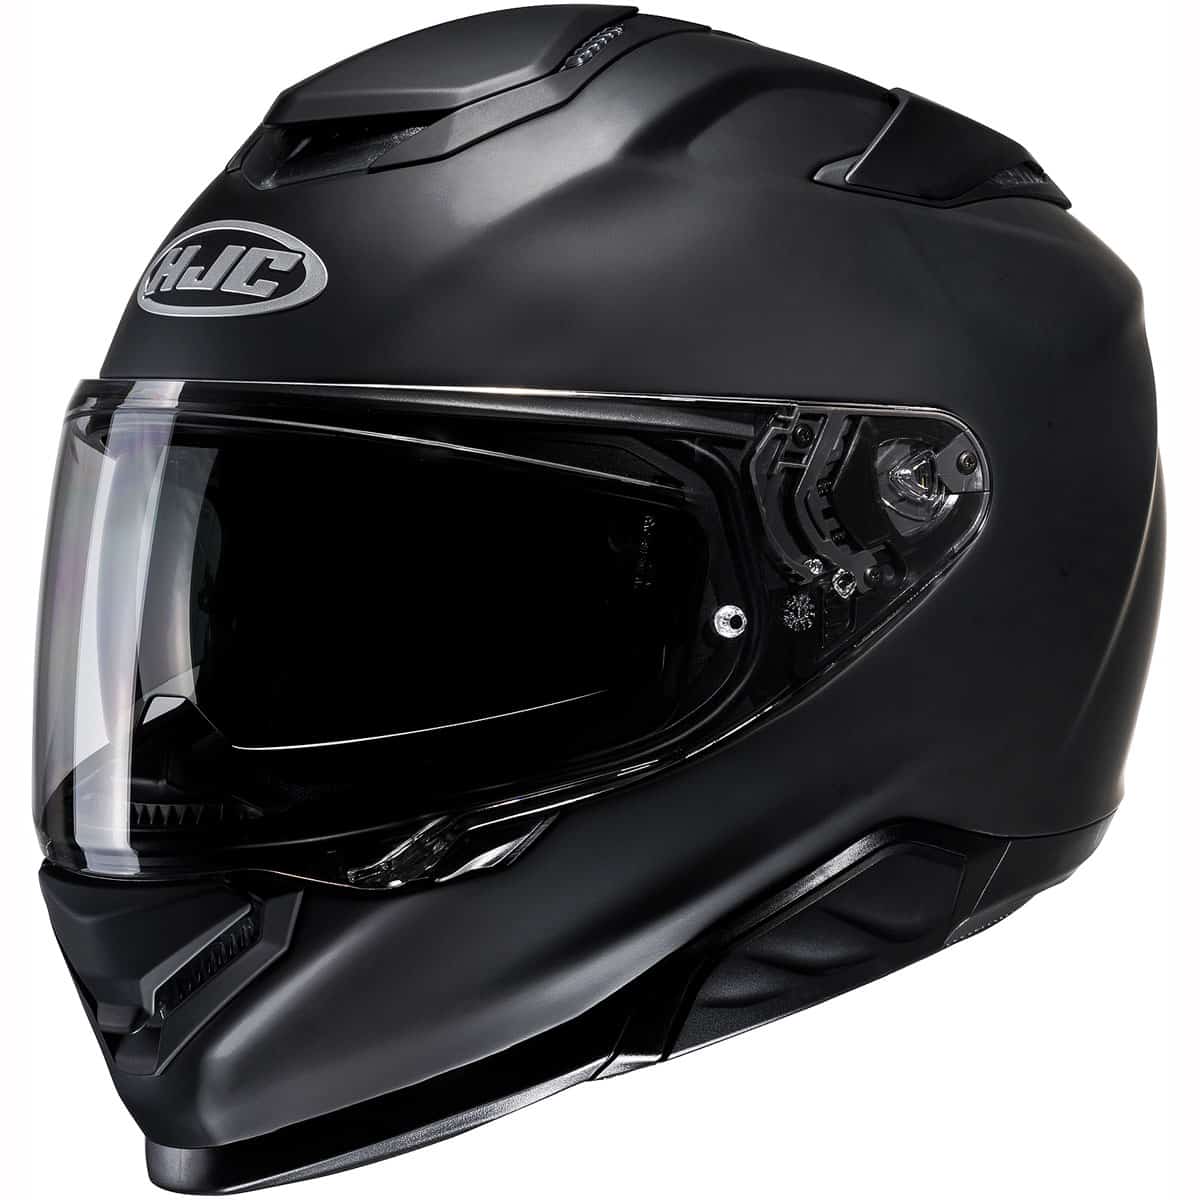 HJC RPHA 71: Premium full face sports touring motorcycle helmet matt black